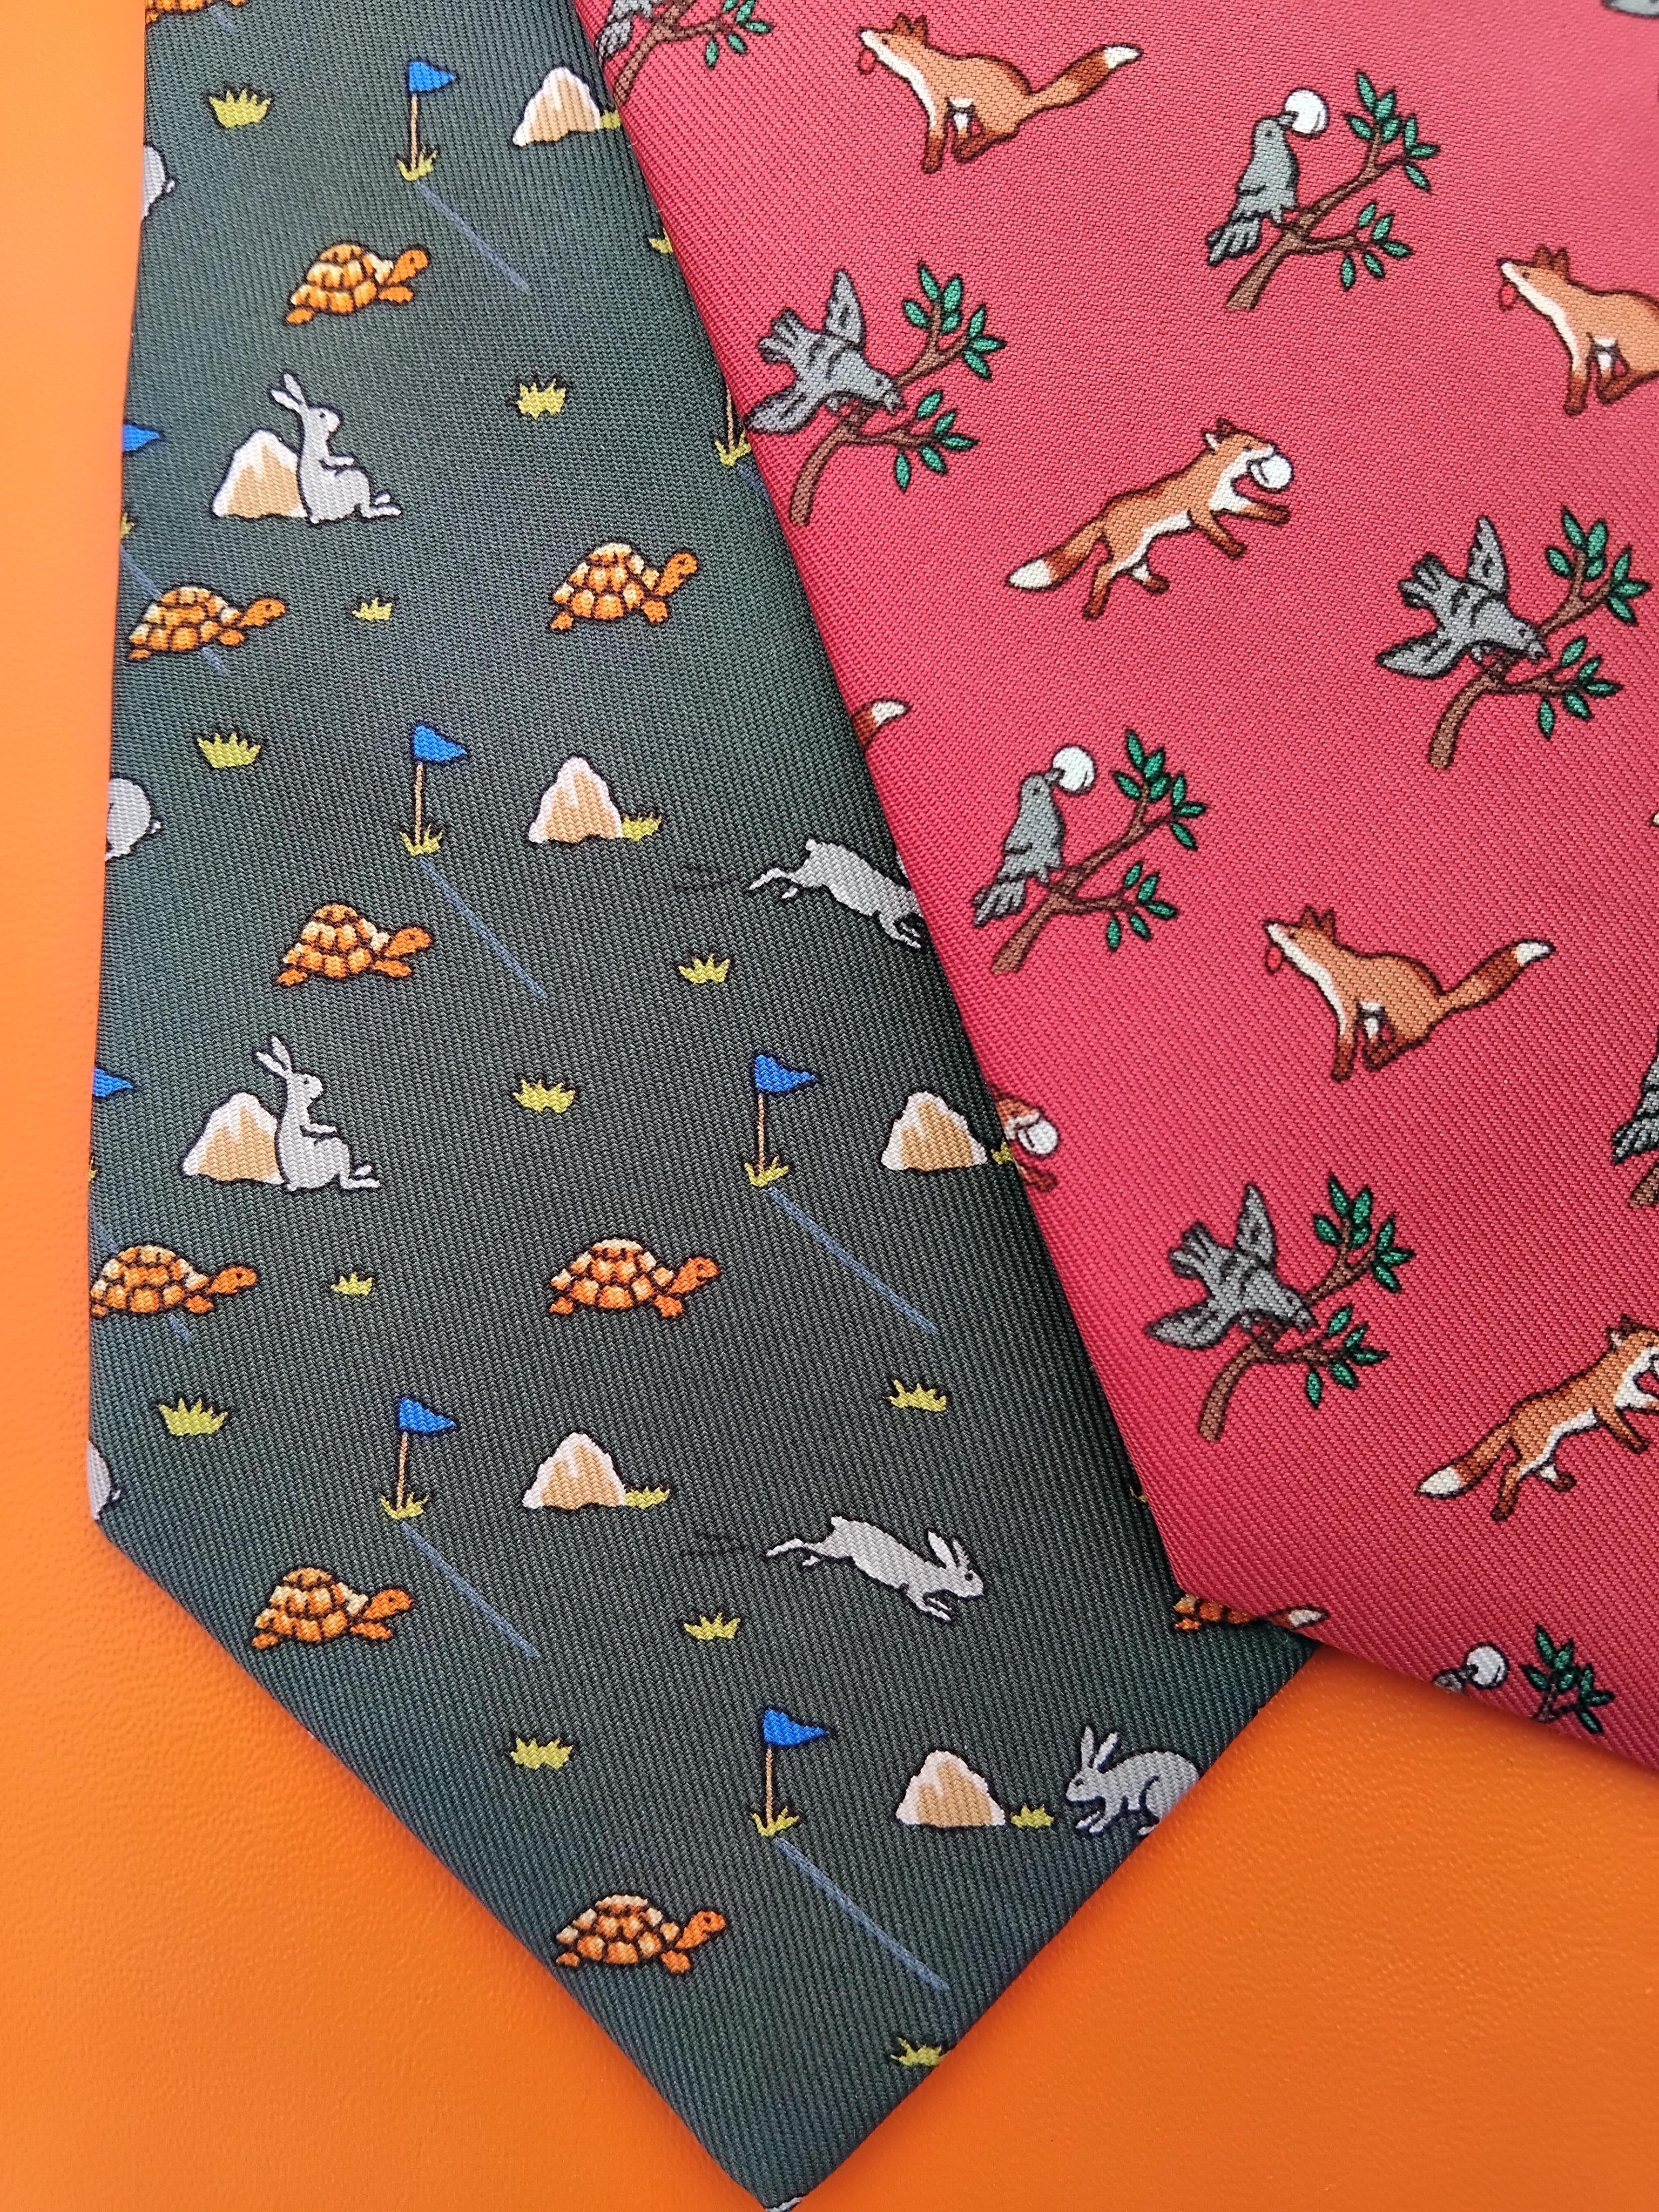 Rare lot de 4 cravates authentiques Hermès

Impressions : Les Fables de La Fontaine

De gauche à droite :

1. Le lièvre et la tortue en vert, gris, orange, bleu. 100% soie. Doublé de soie verte unie. Avec étiquette d'entretien. 148 x 9,3 cm (58,27 x